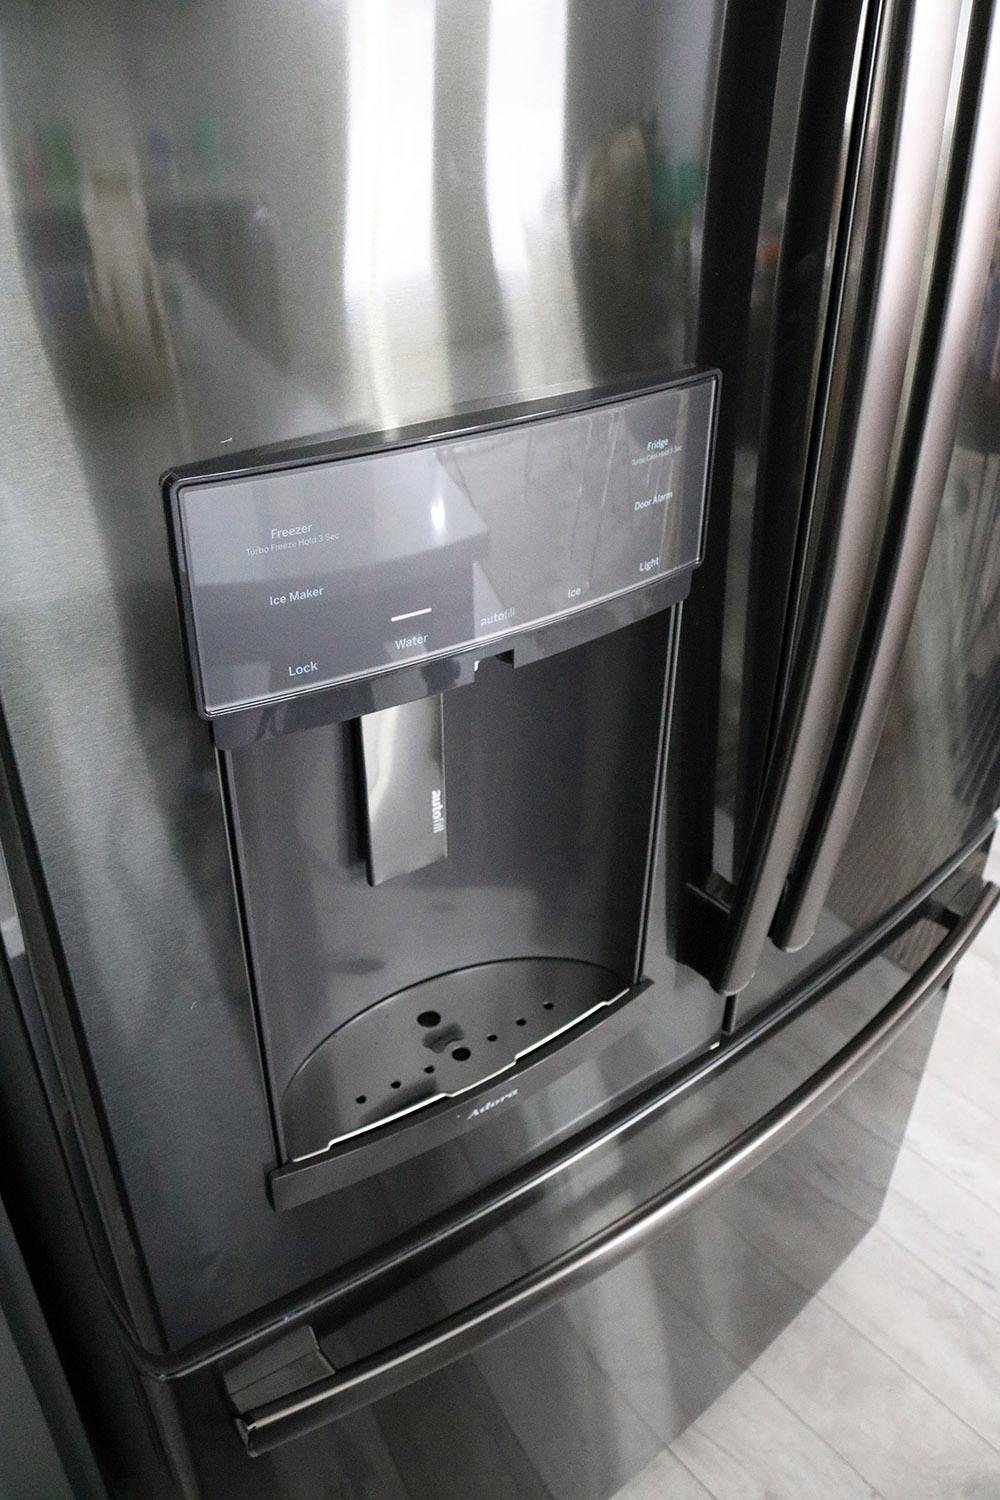 A GE Adora refrigerator with autofill.